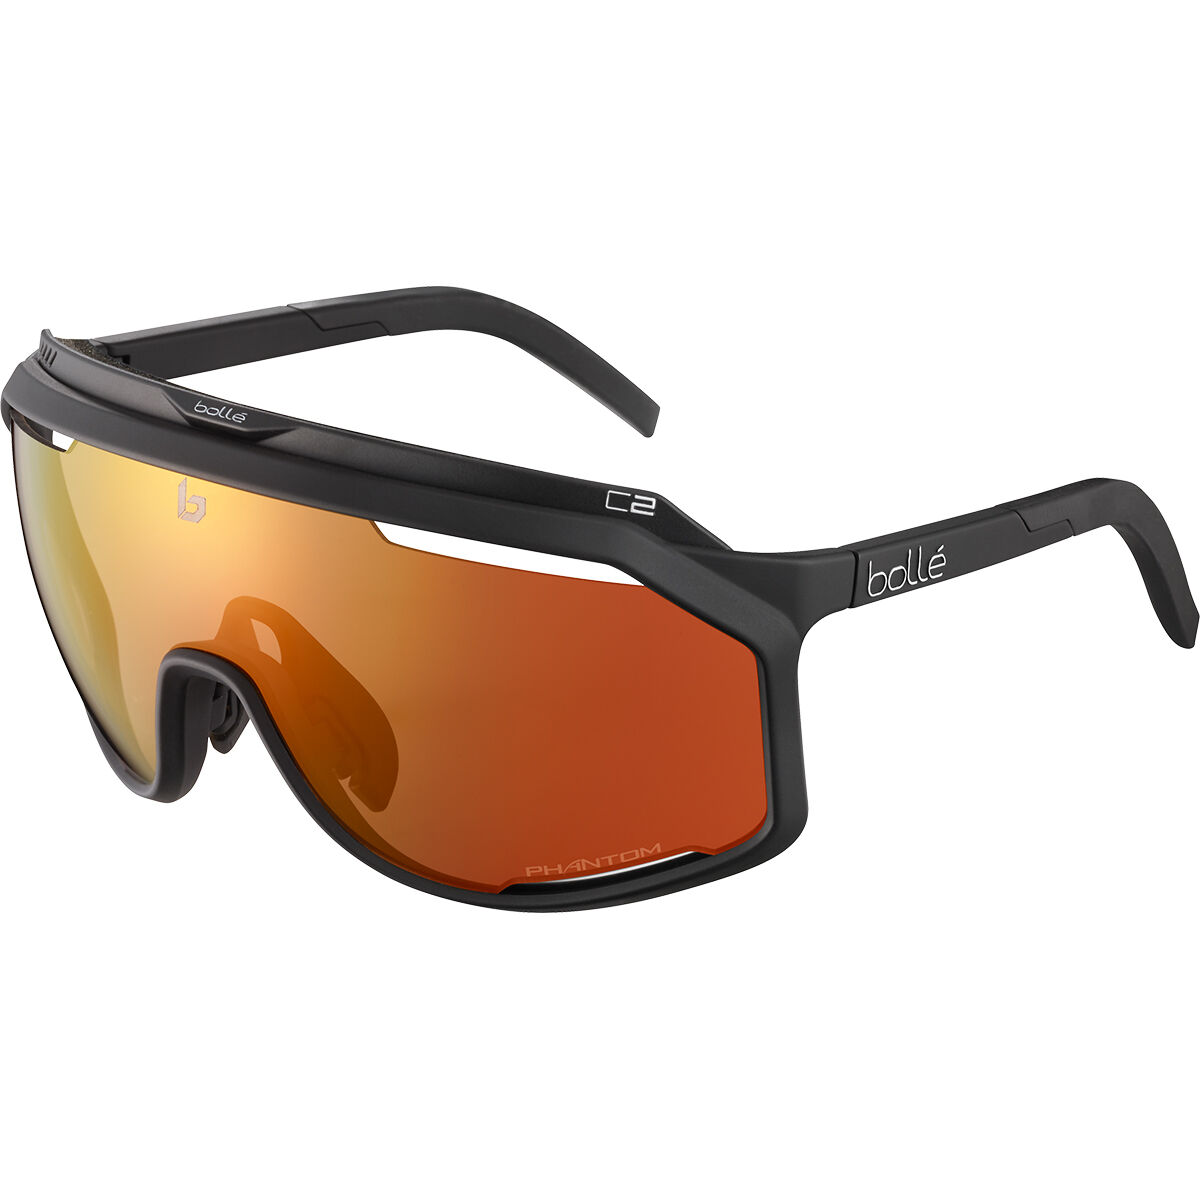 Bollé CHRONOSHIELD Cycling Sunglasses - Phantom Lens Technology